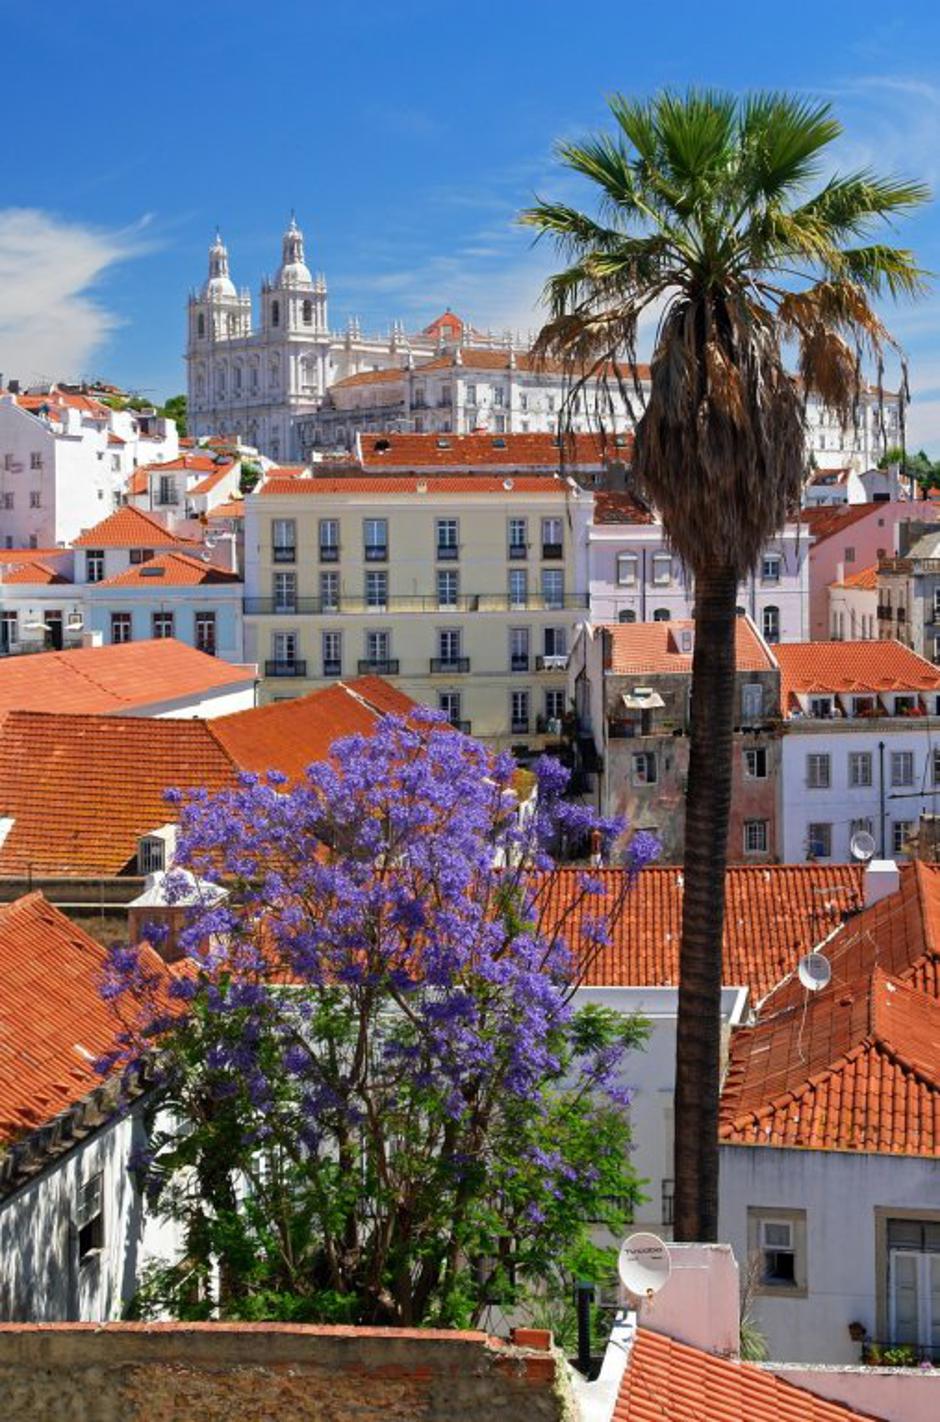 Lizbona, Portugalska | Avtor: Profimedias